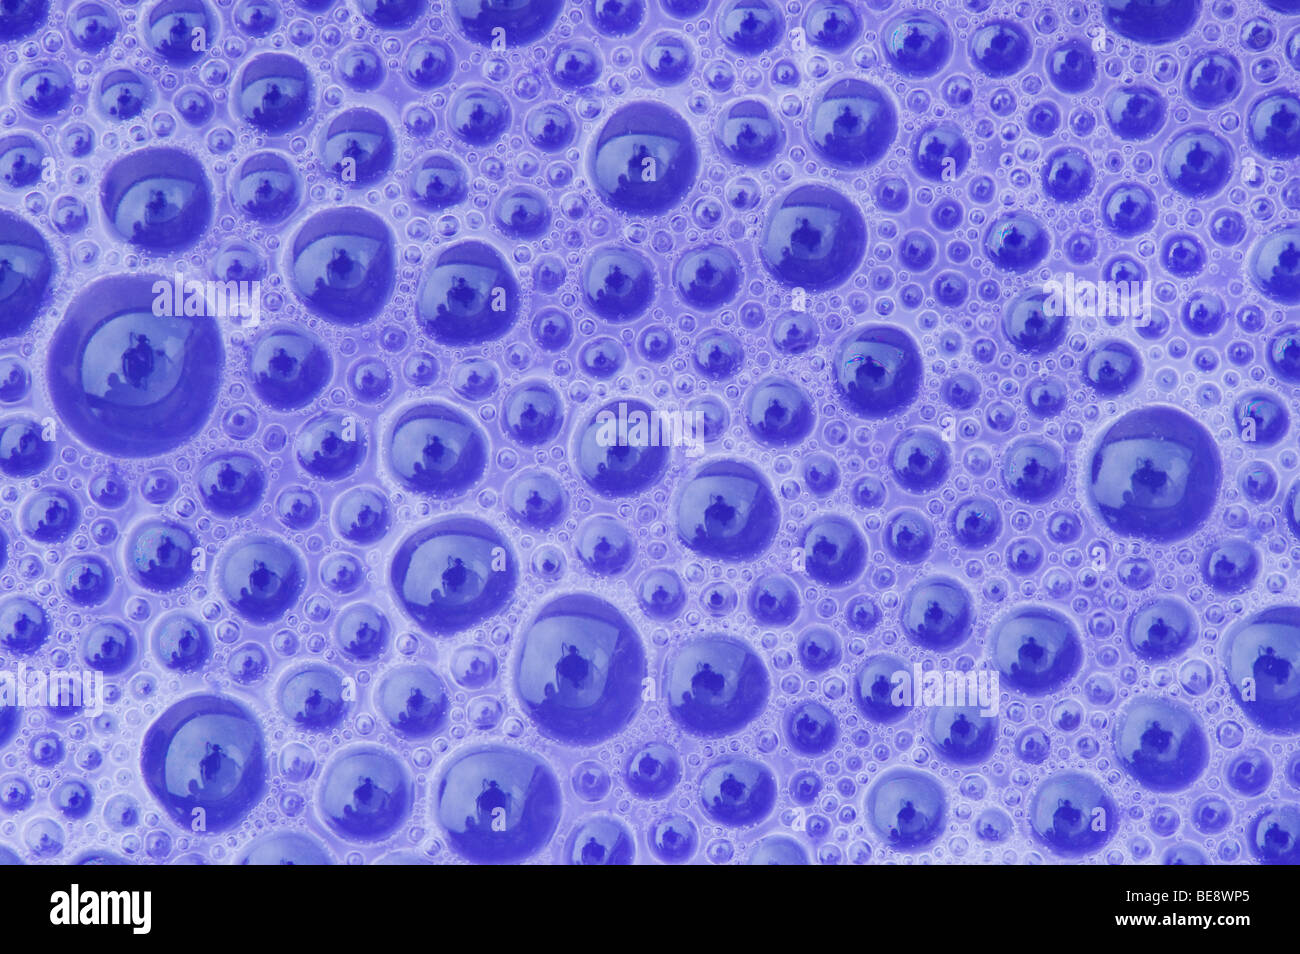 Motif bulles d'eau violet Banque D'Images